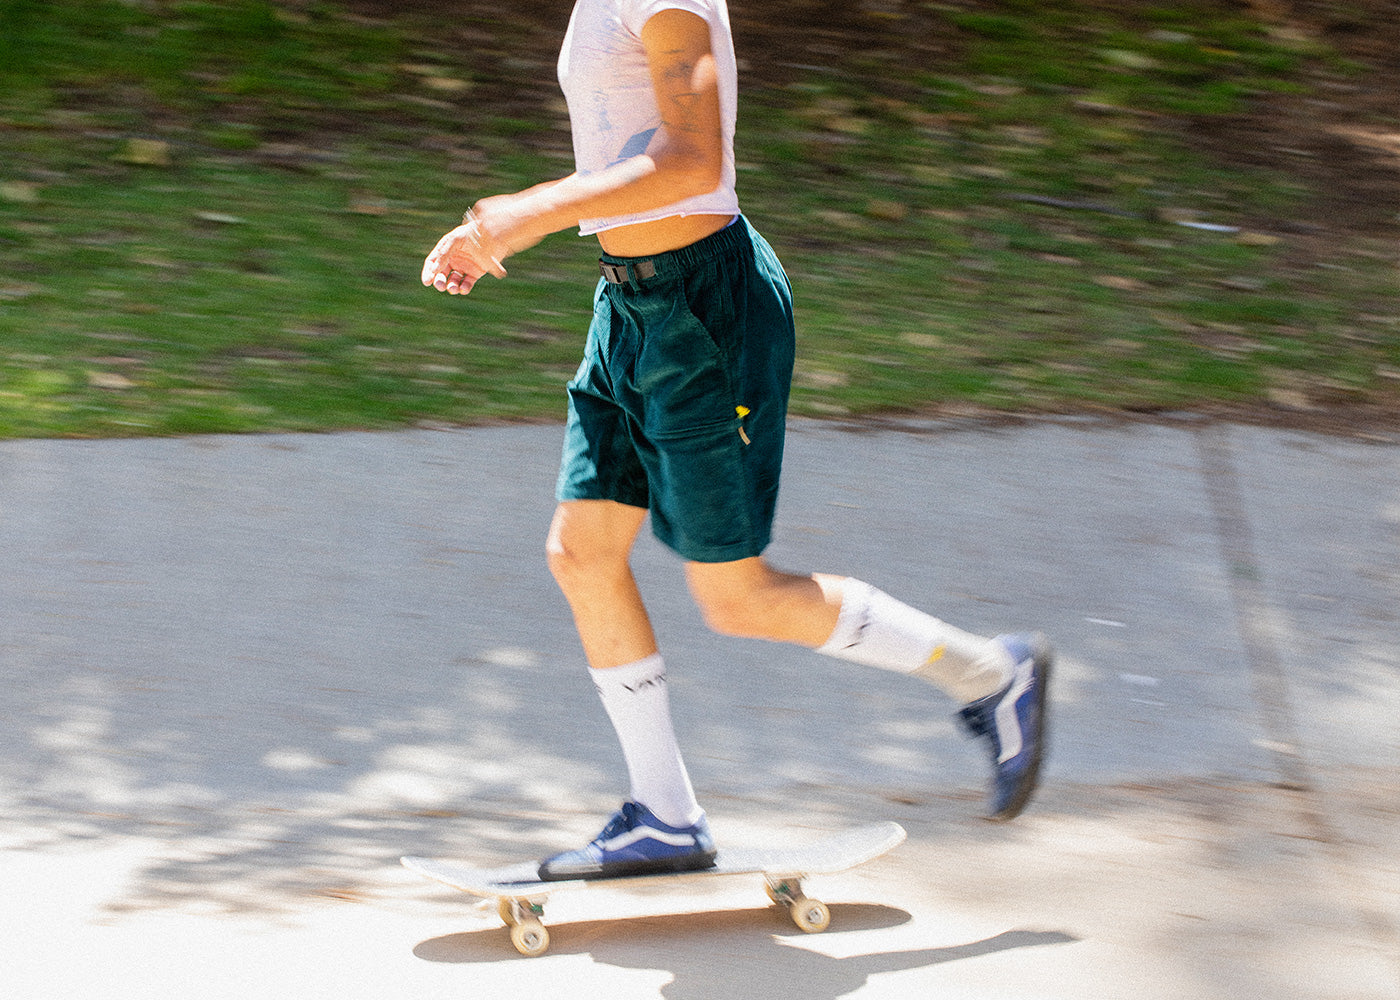 The Proper Skateboarding Stance